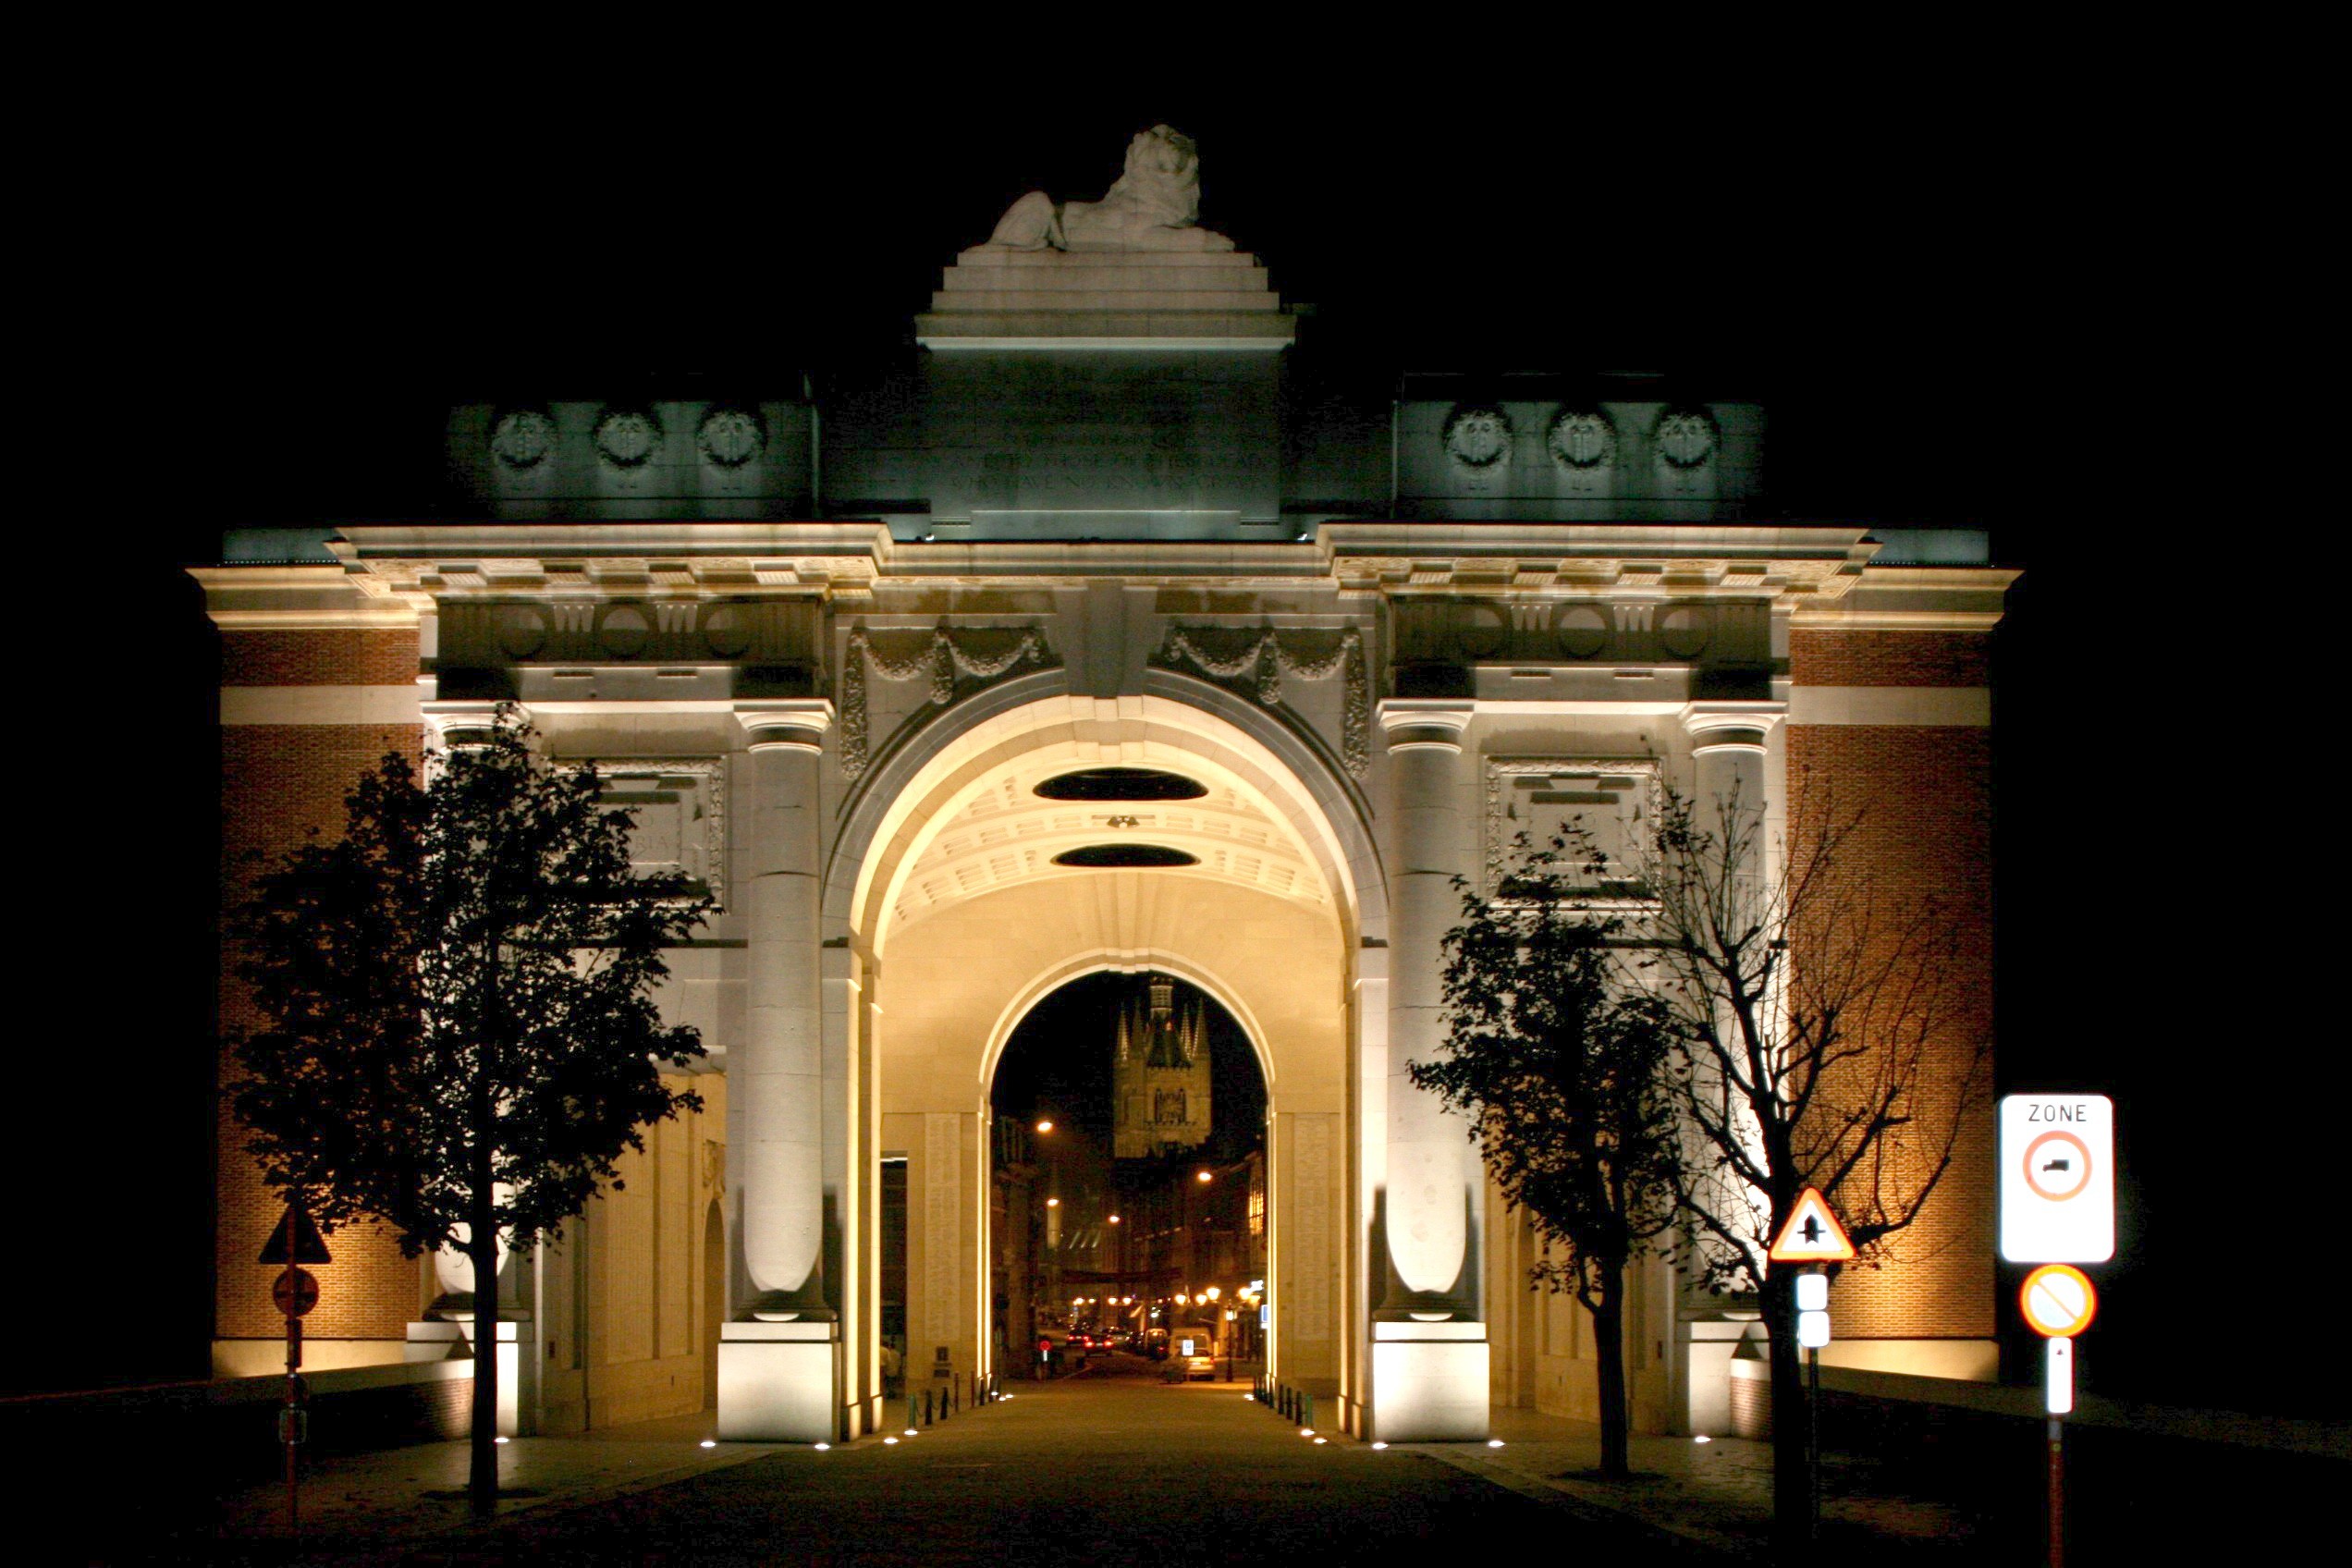 Menin Gate Memorial, Ieper (Ypres)